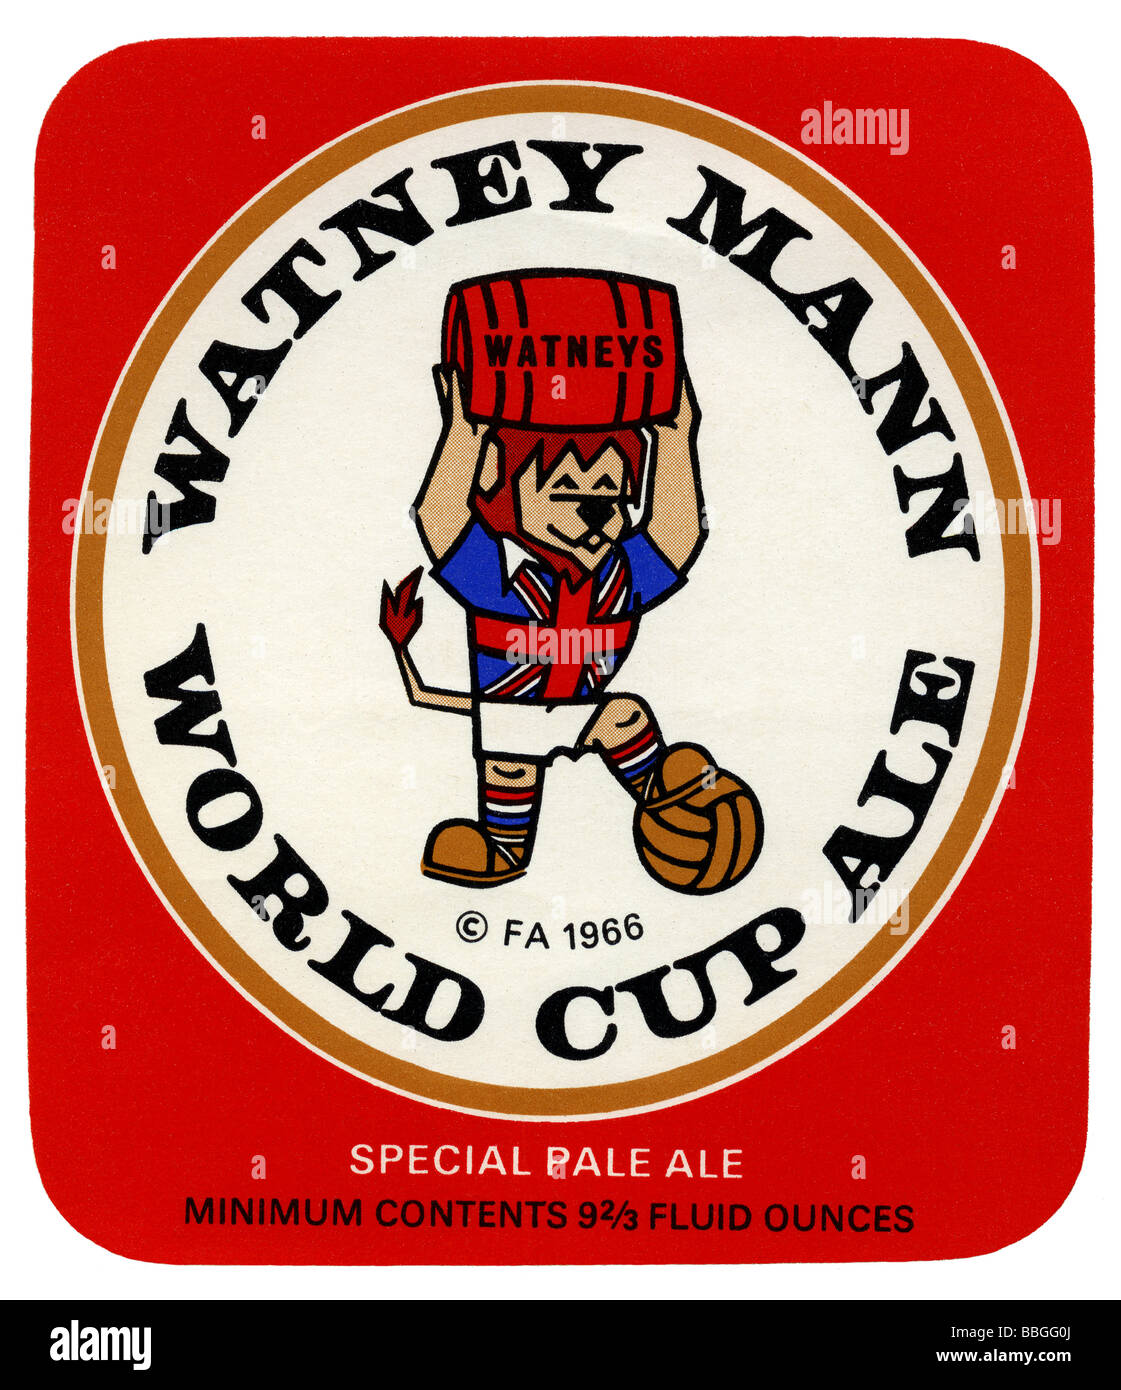 Ancienne étiquette bière britannique de Watney Mann Ale Coupe du Monde 1966, Londres Banque D'Images